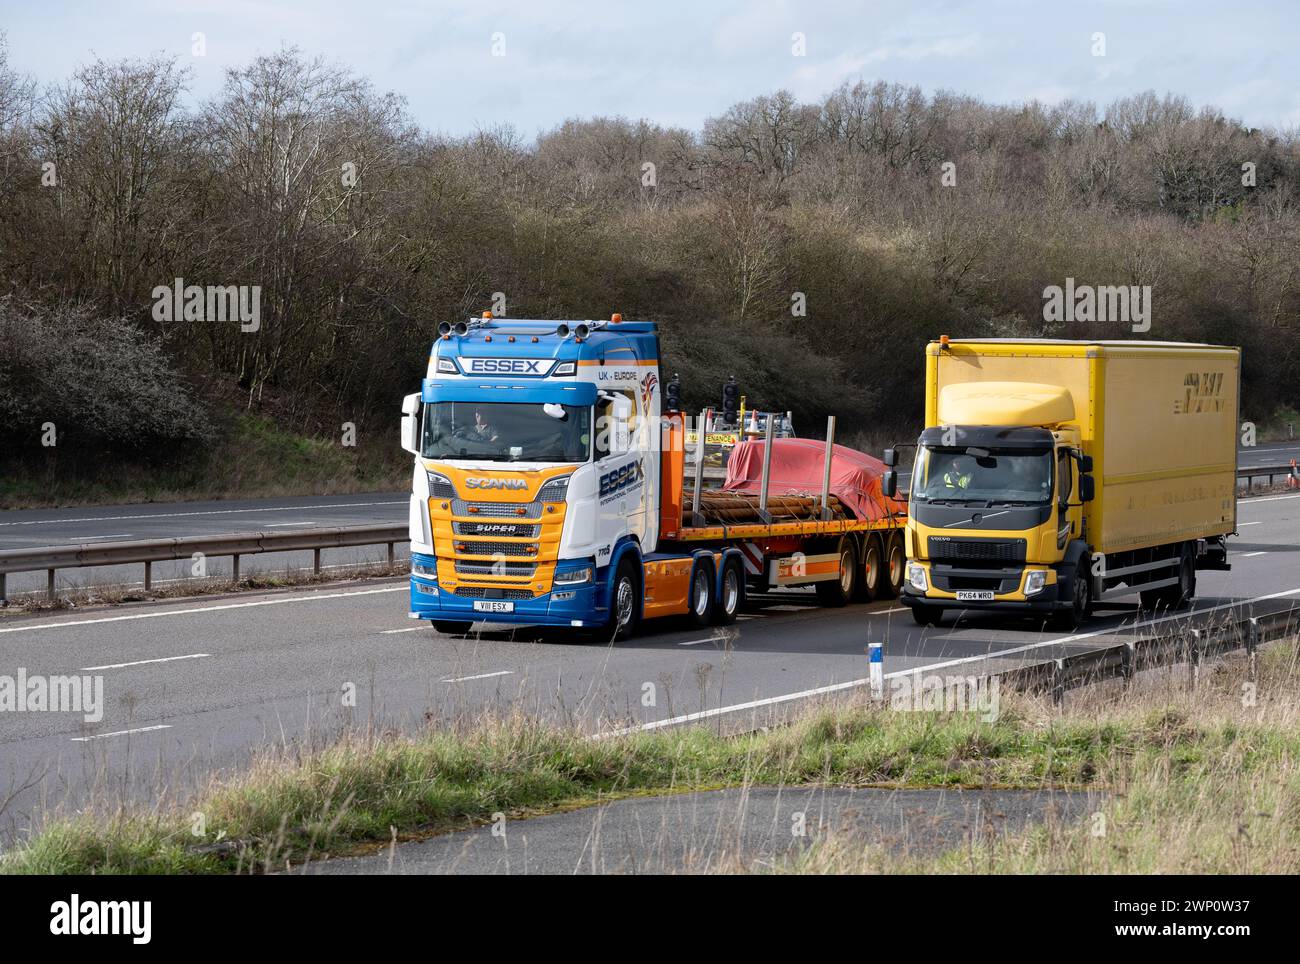 Lorries on the M40 motorway, Warwickshire, UK Stock Photo